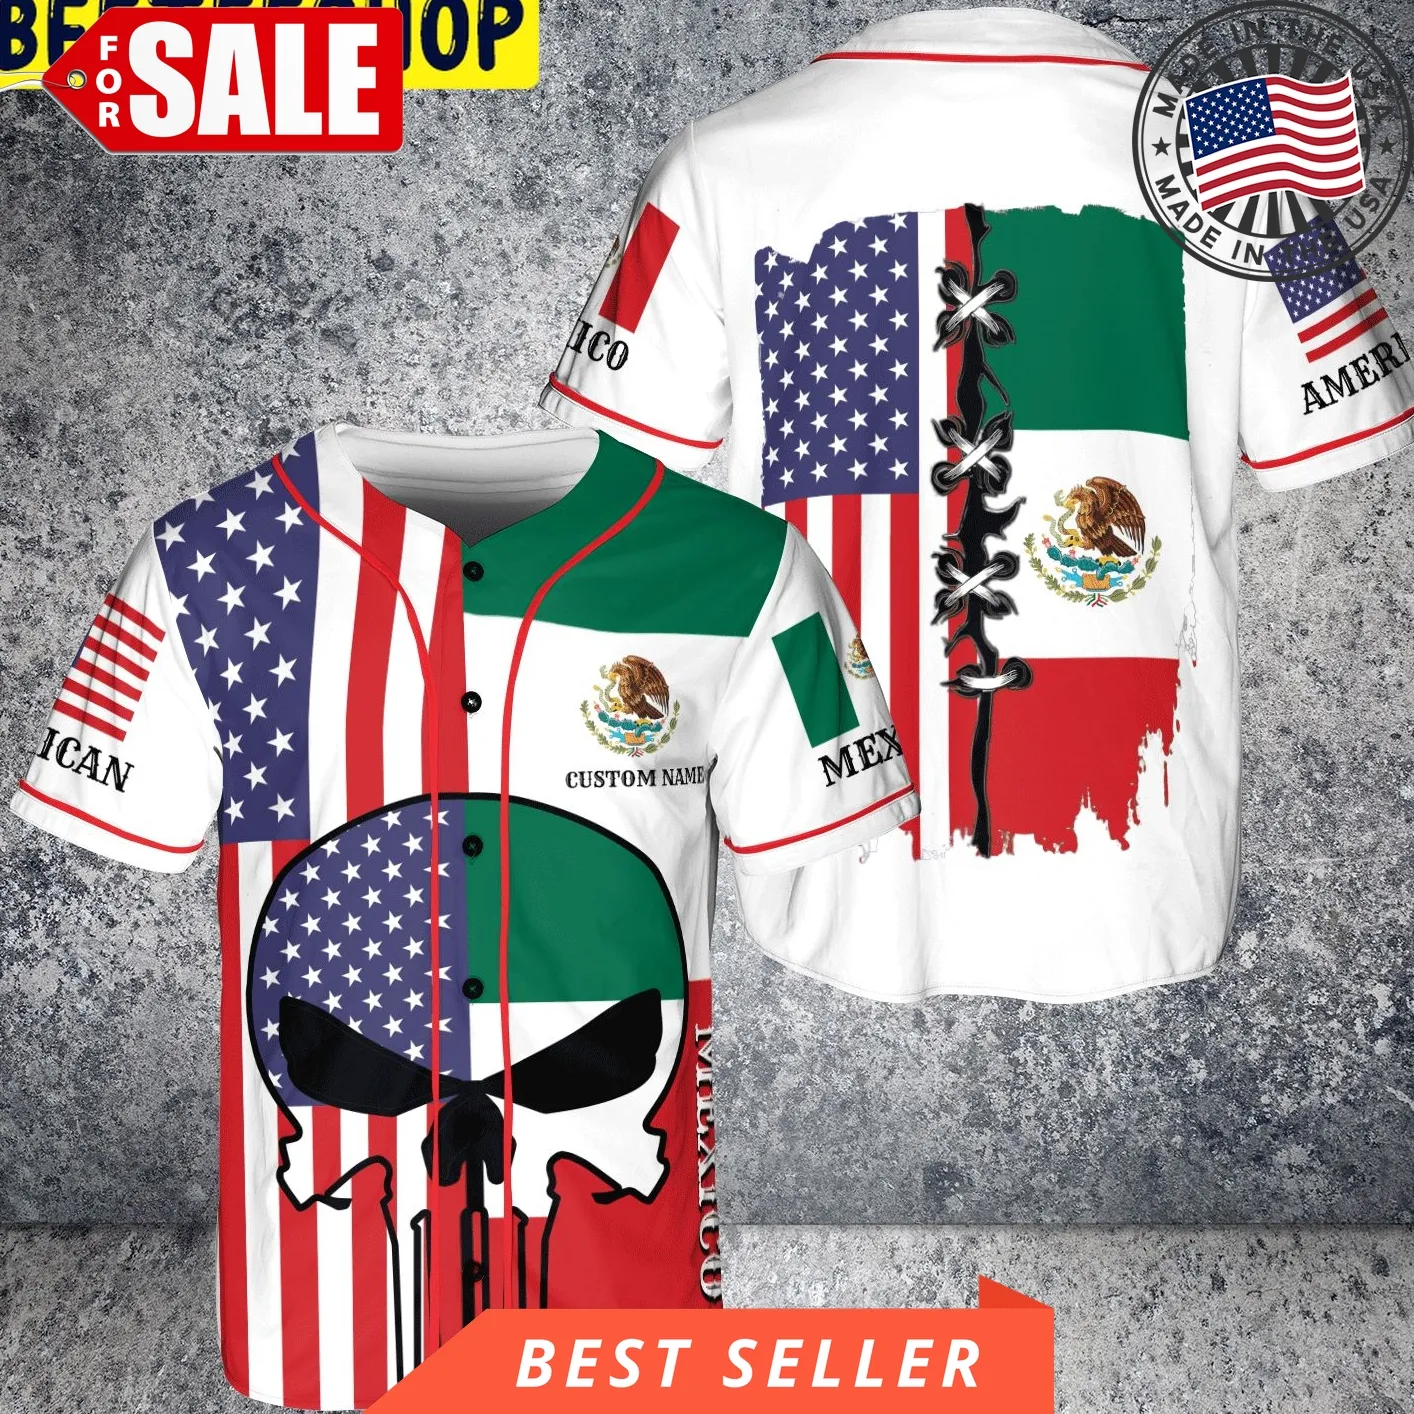 Custom Name Skull Mexico American White Trending Jersey Baseball Unisex Tshirt